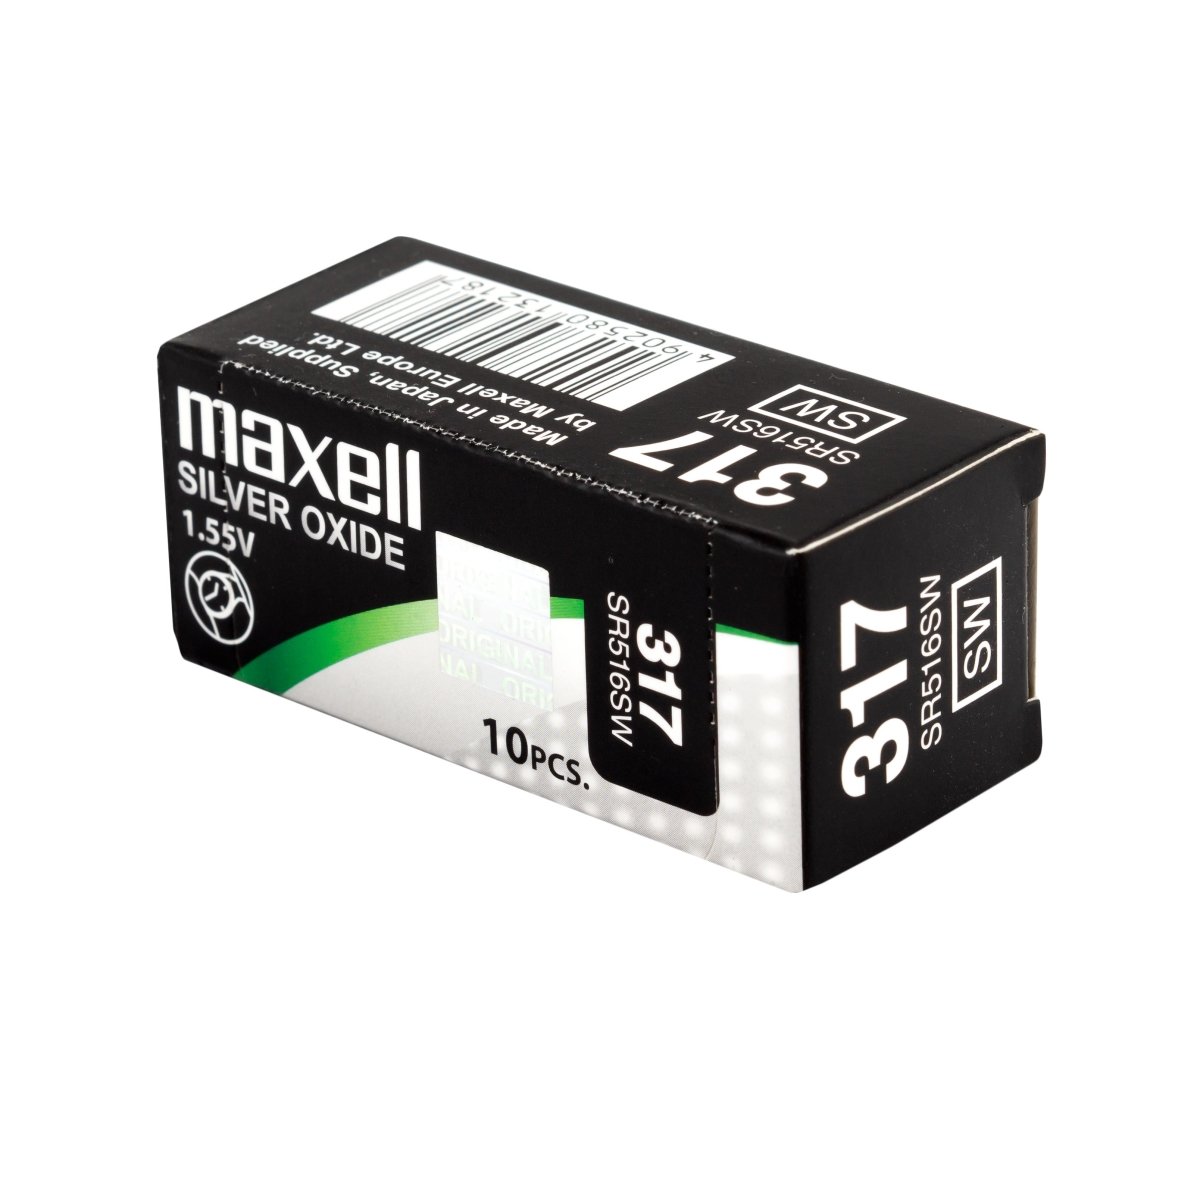 10x Maxell 317 Pila Botón Oxido de Plata SR516SW, 1.55V - movilcom.com